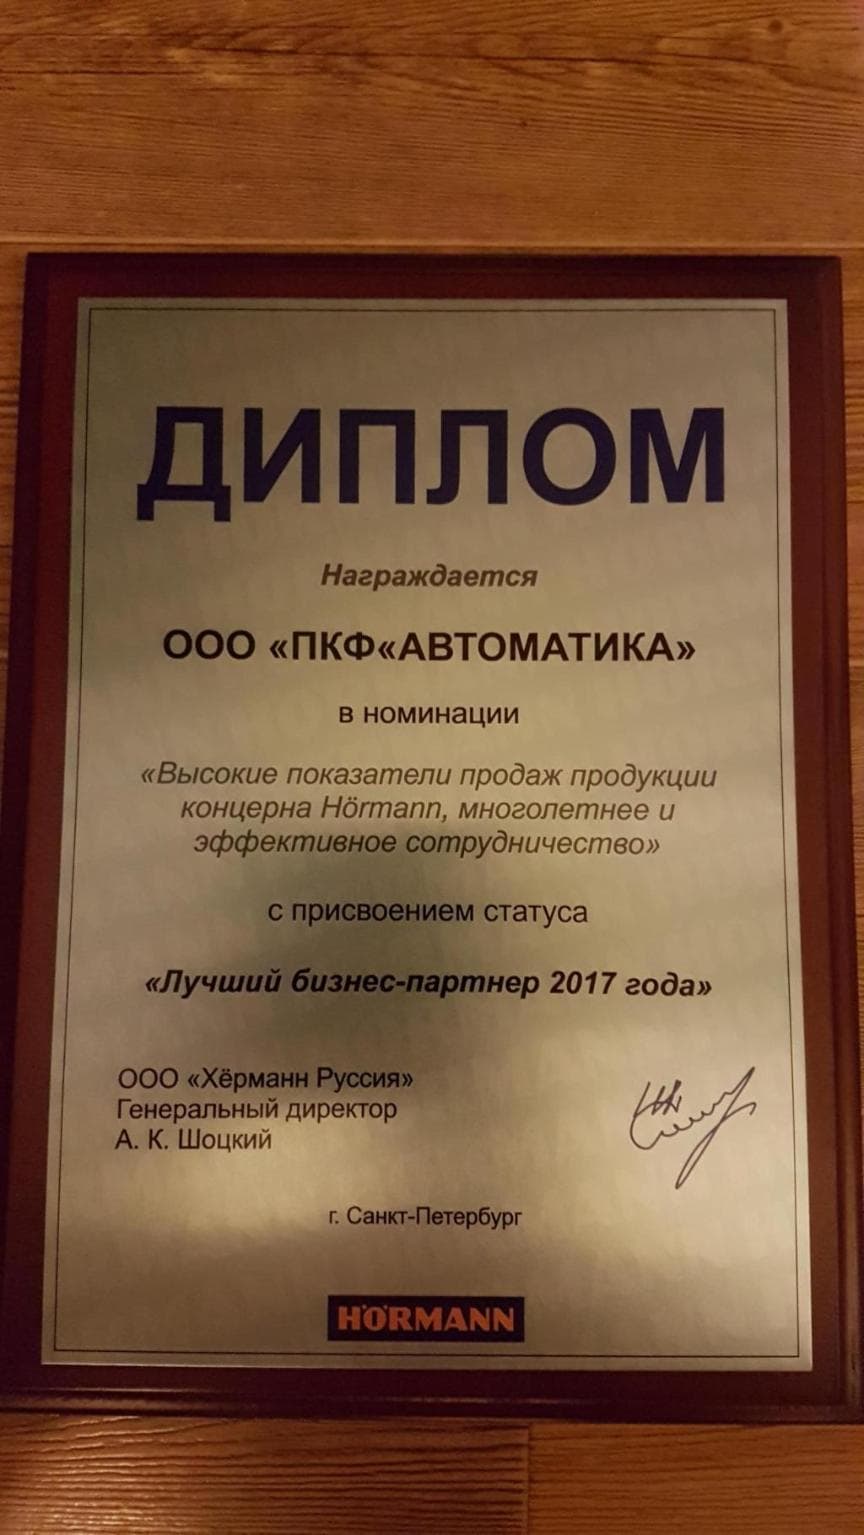 Сертификат лучший бизнес партнер HORMANN 2017 ПКФ "Автоматика"